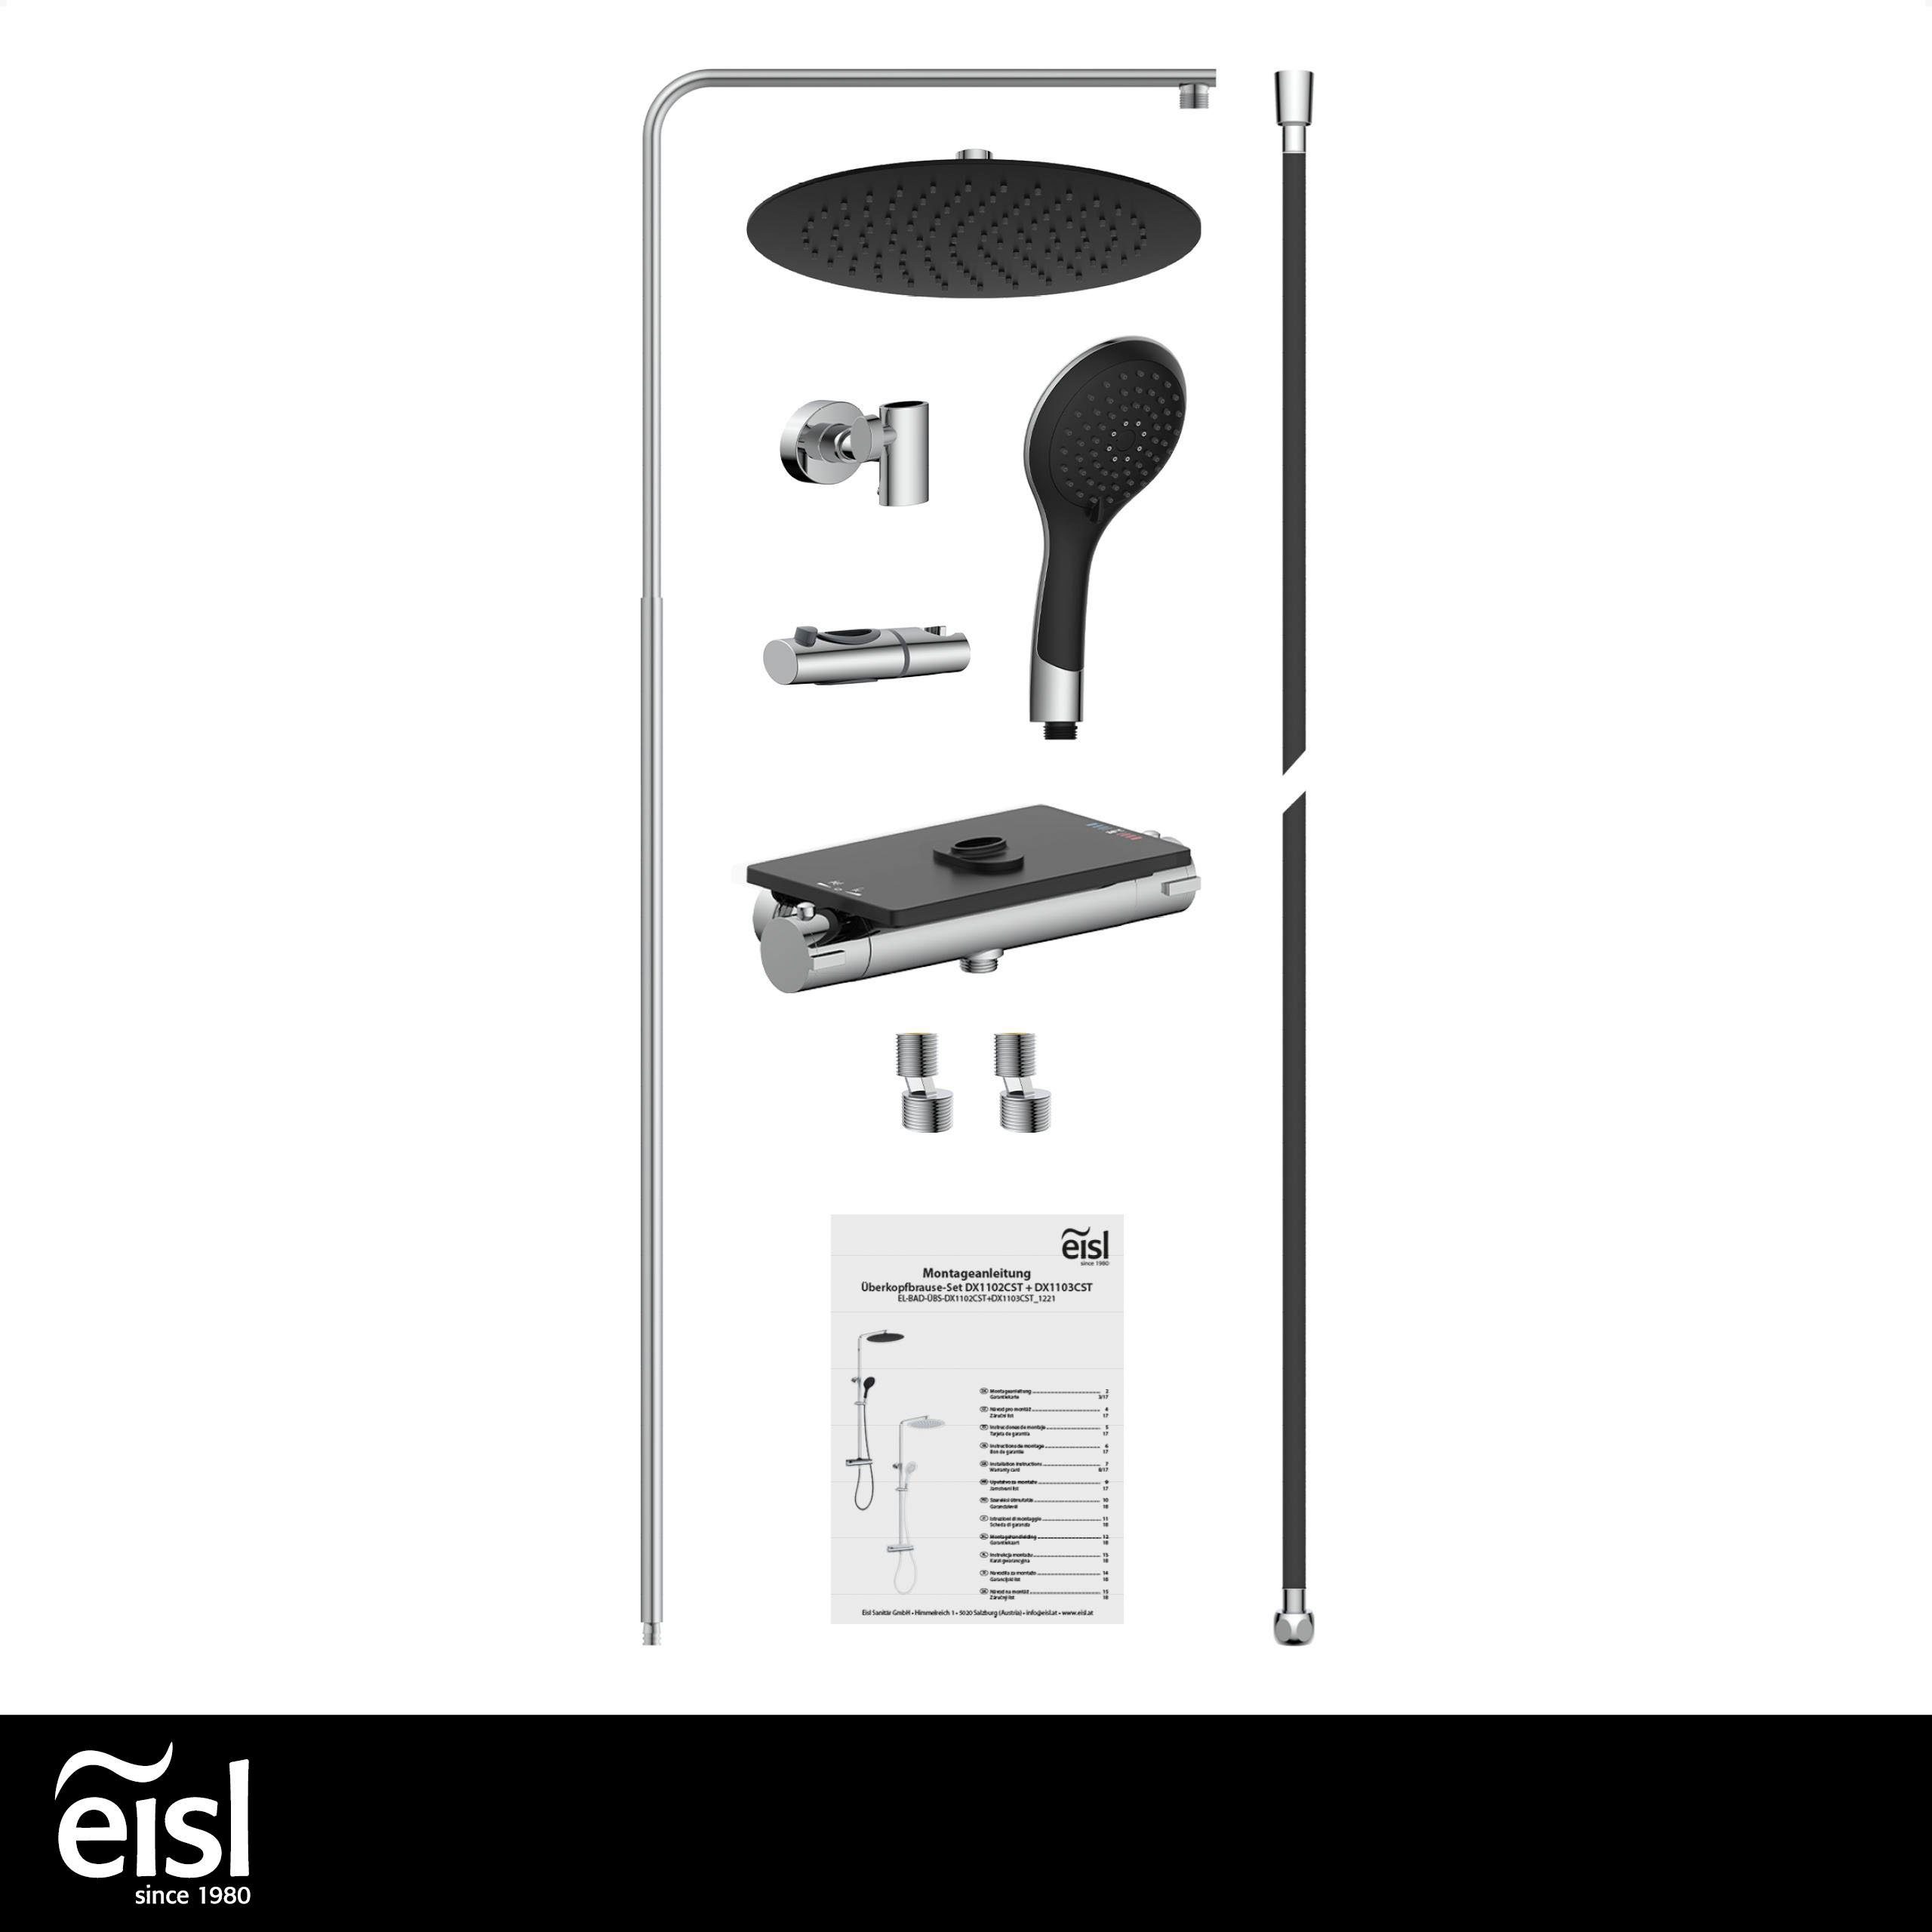 Eisl Brausegarnitur Grande Vita, Höhe cm, Ablage, schwarz-chromfarben und Wandhalterung mit 101 mit Regendusche Duschsystem Thermostat